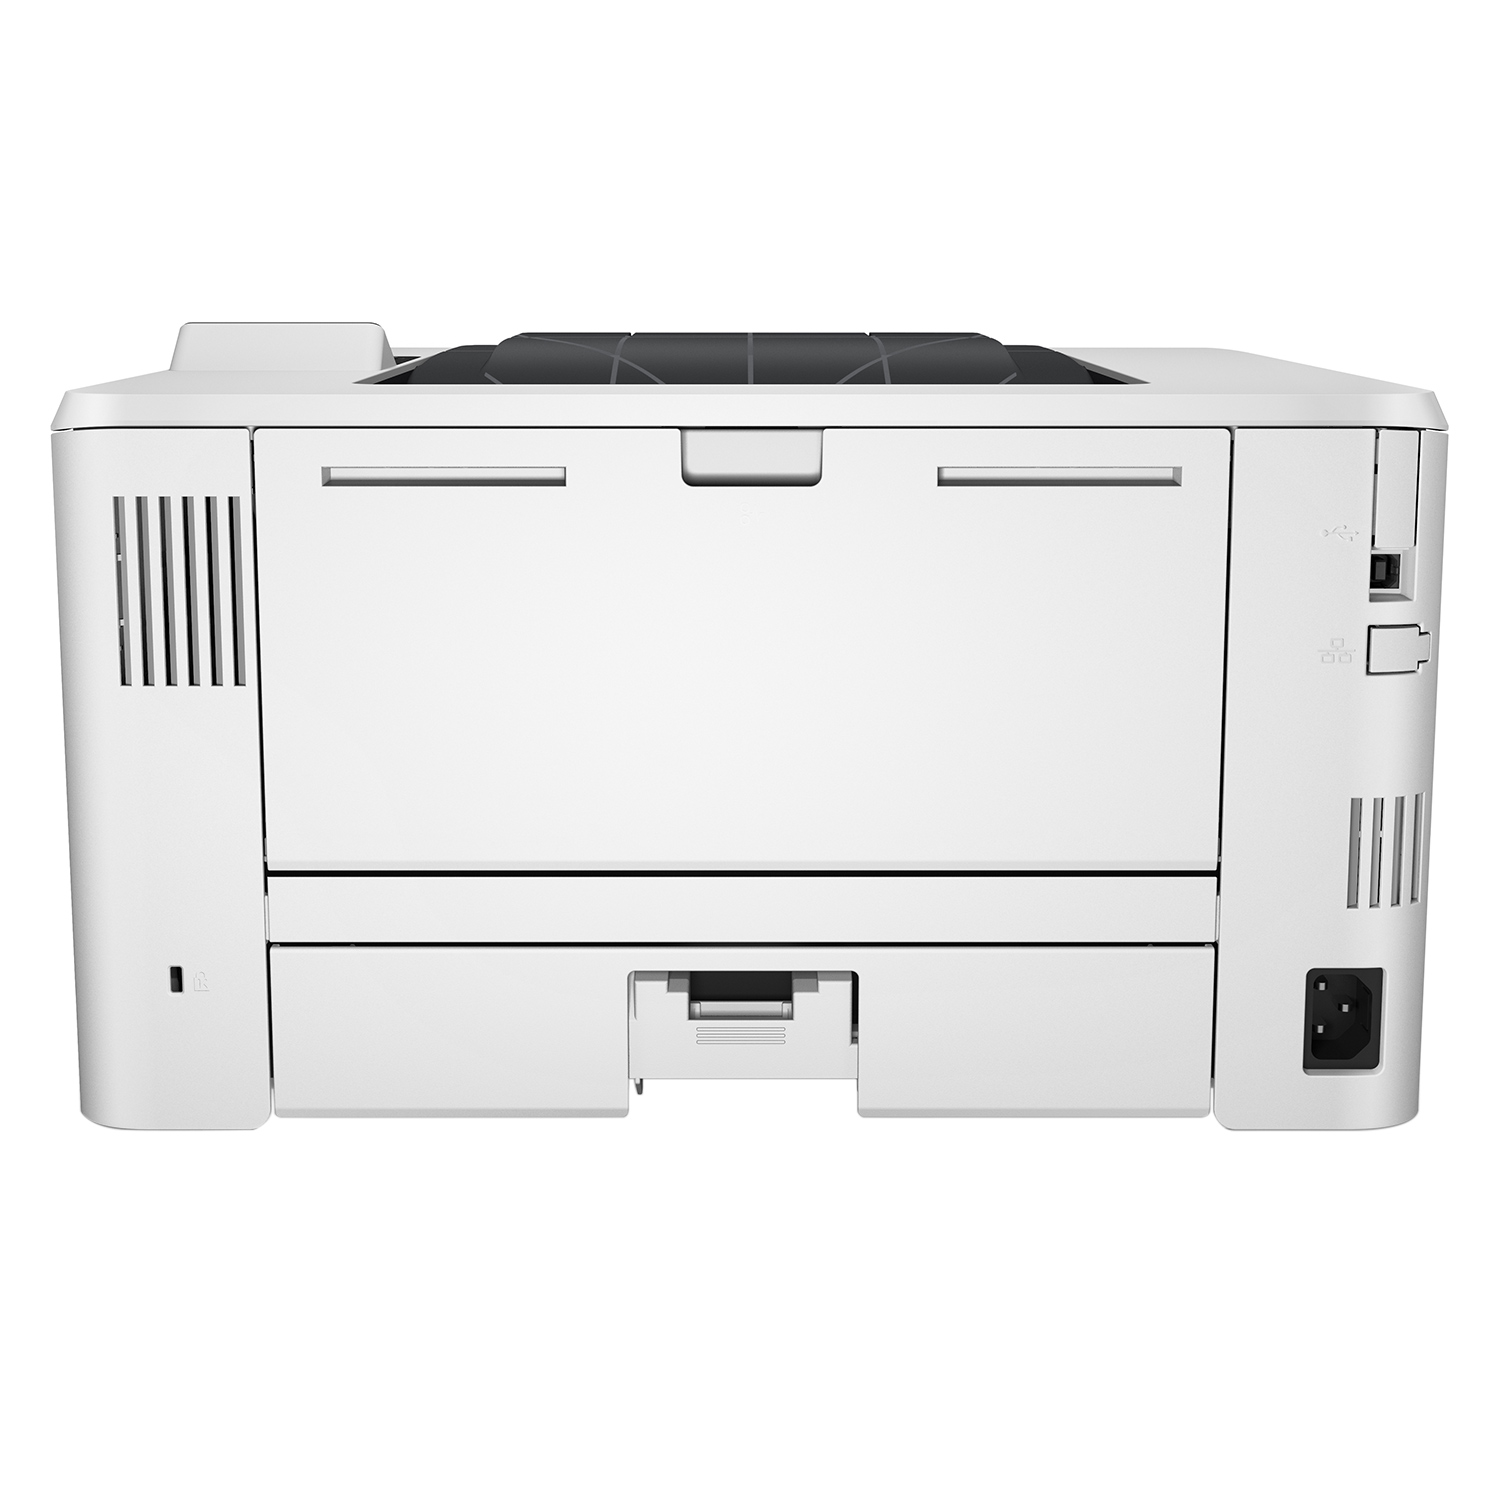 Máy In HP LaserJet Pro 400 M402D Duplex - Hàng Chính Hãng